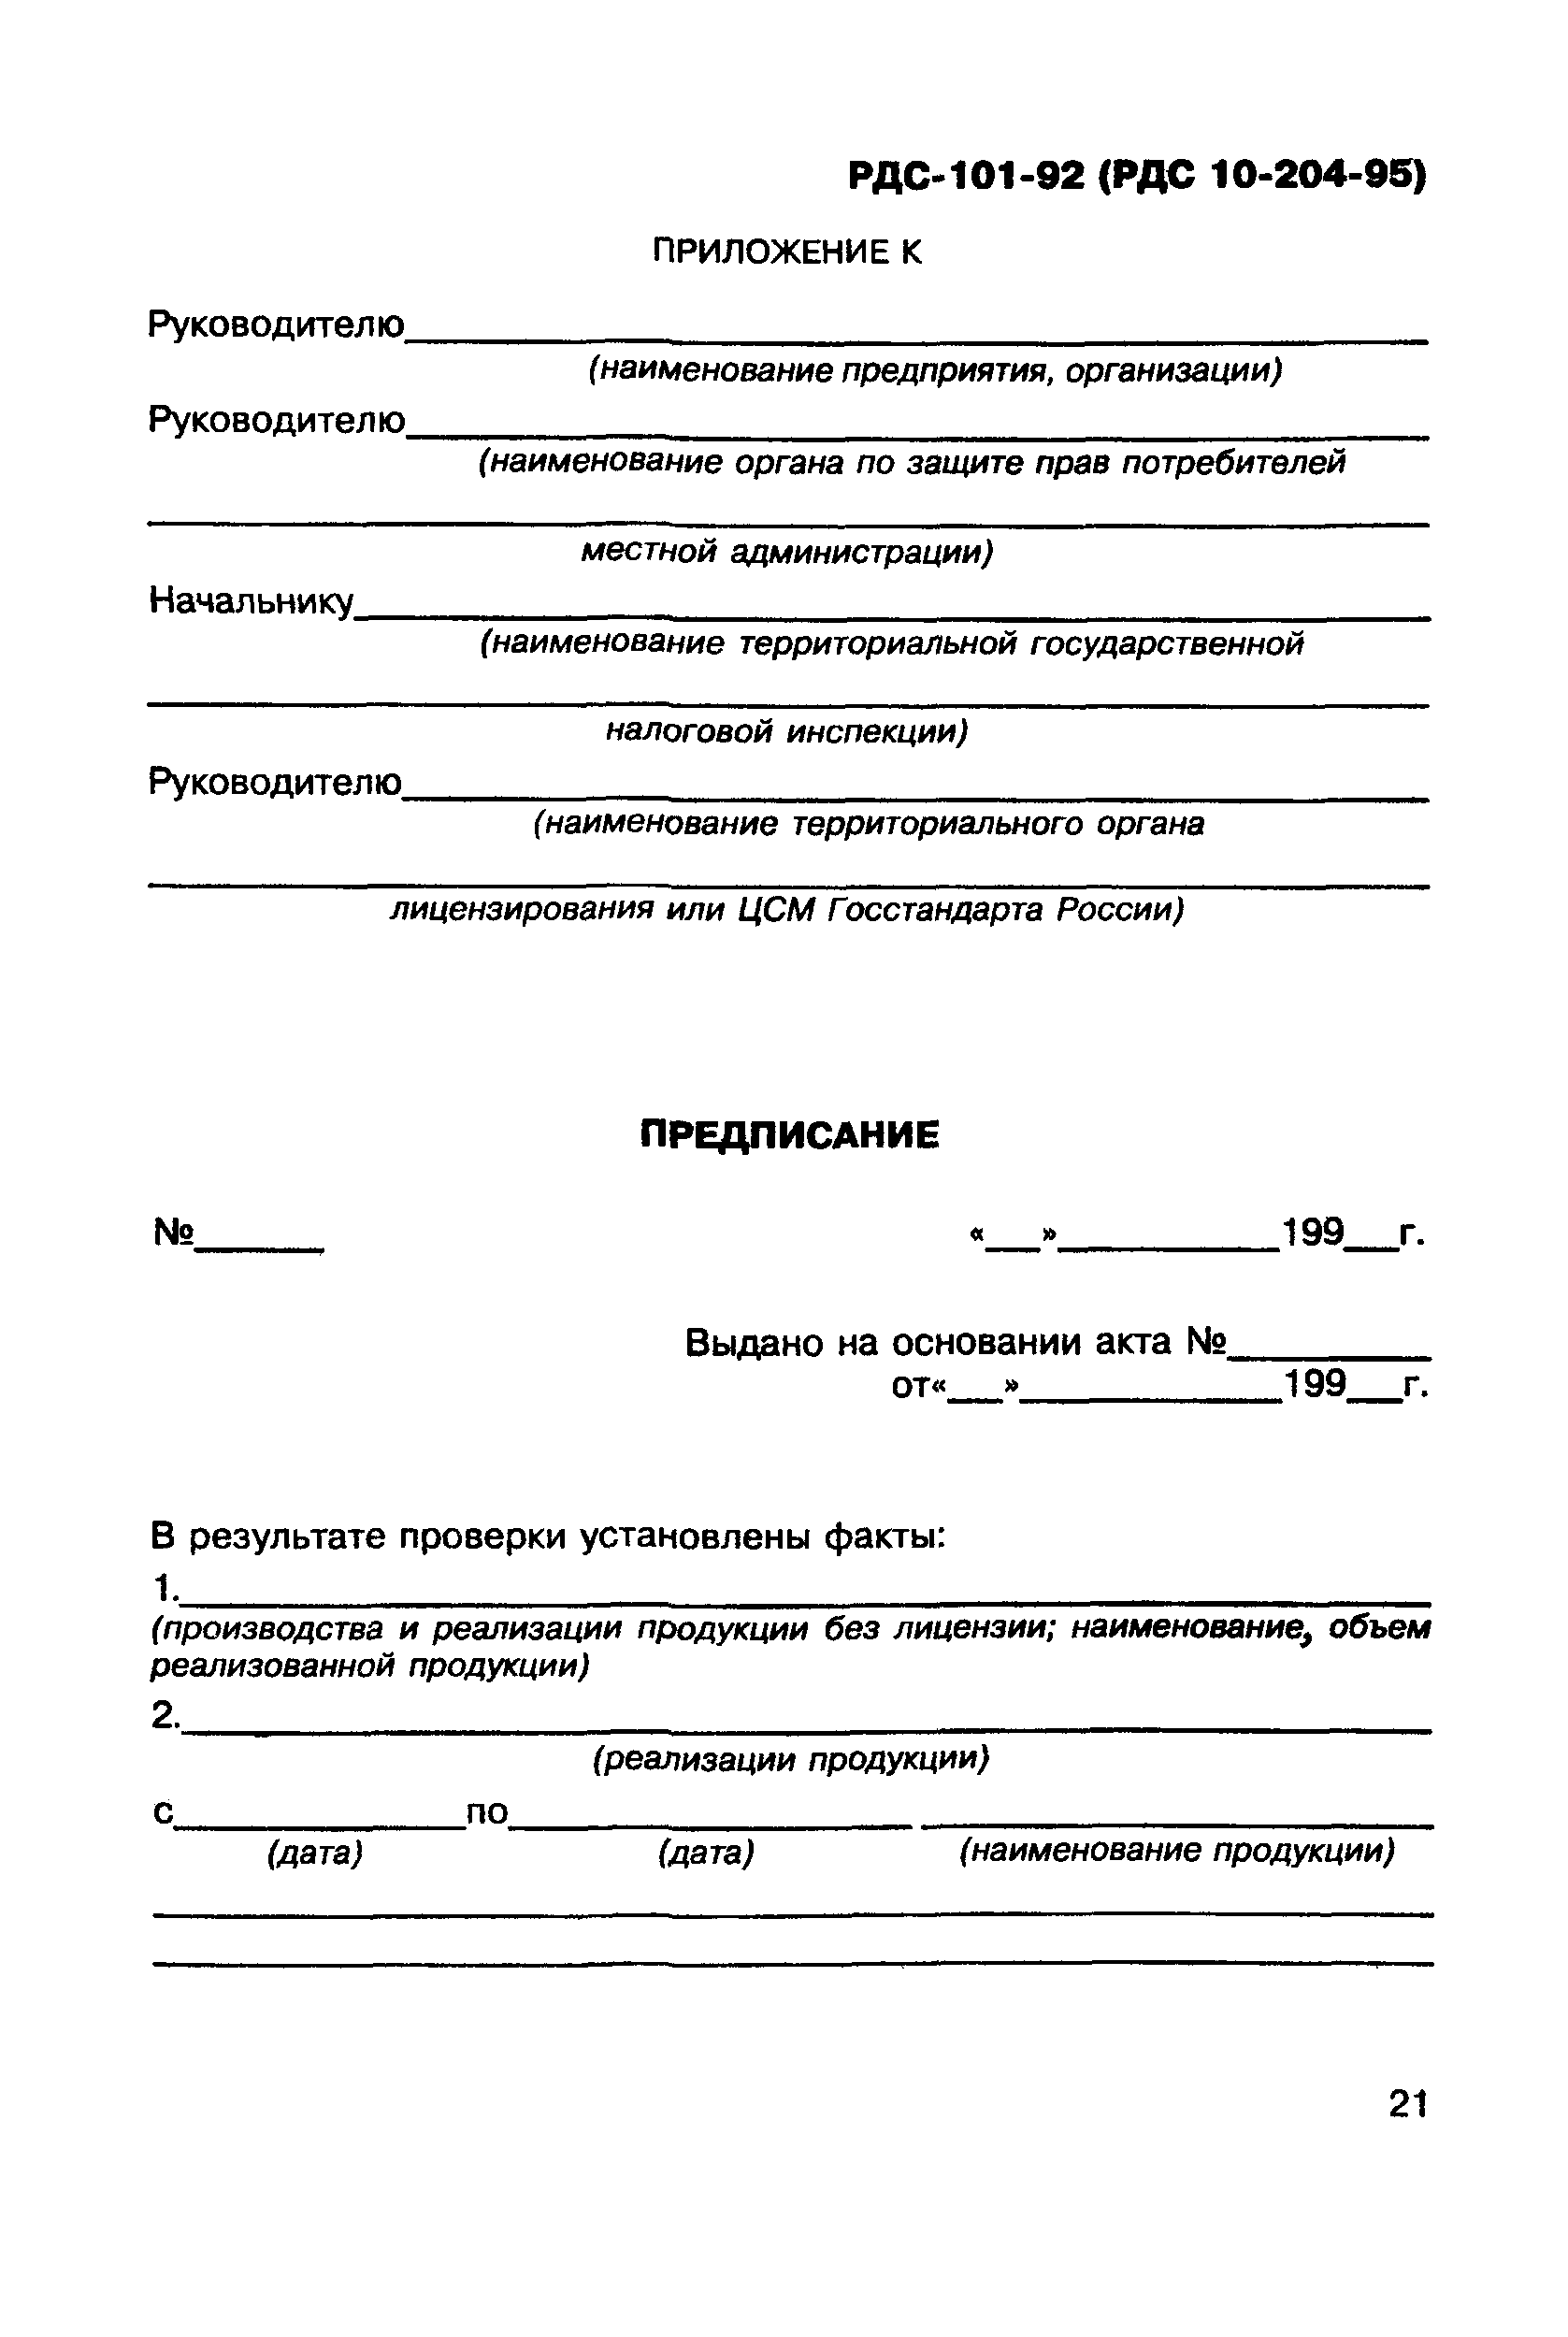 РДС 10-204-95